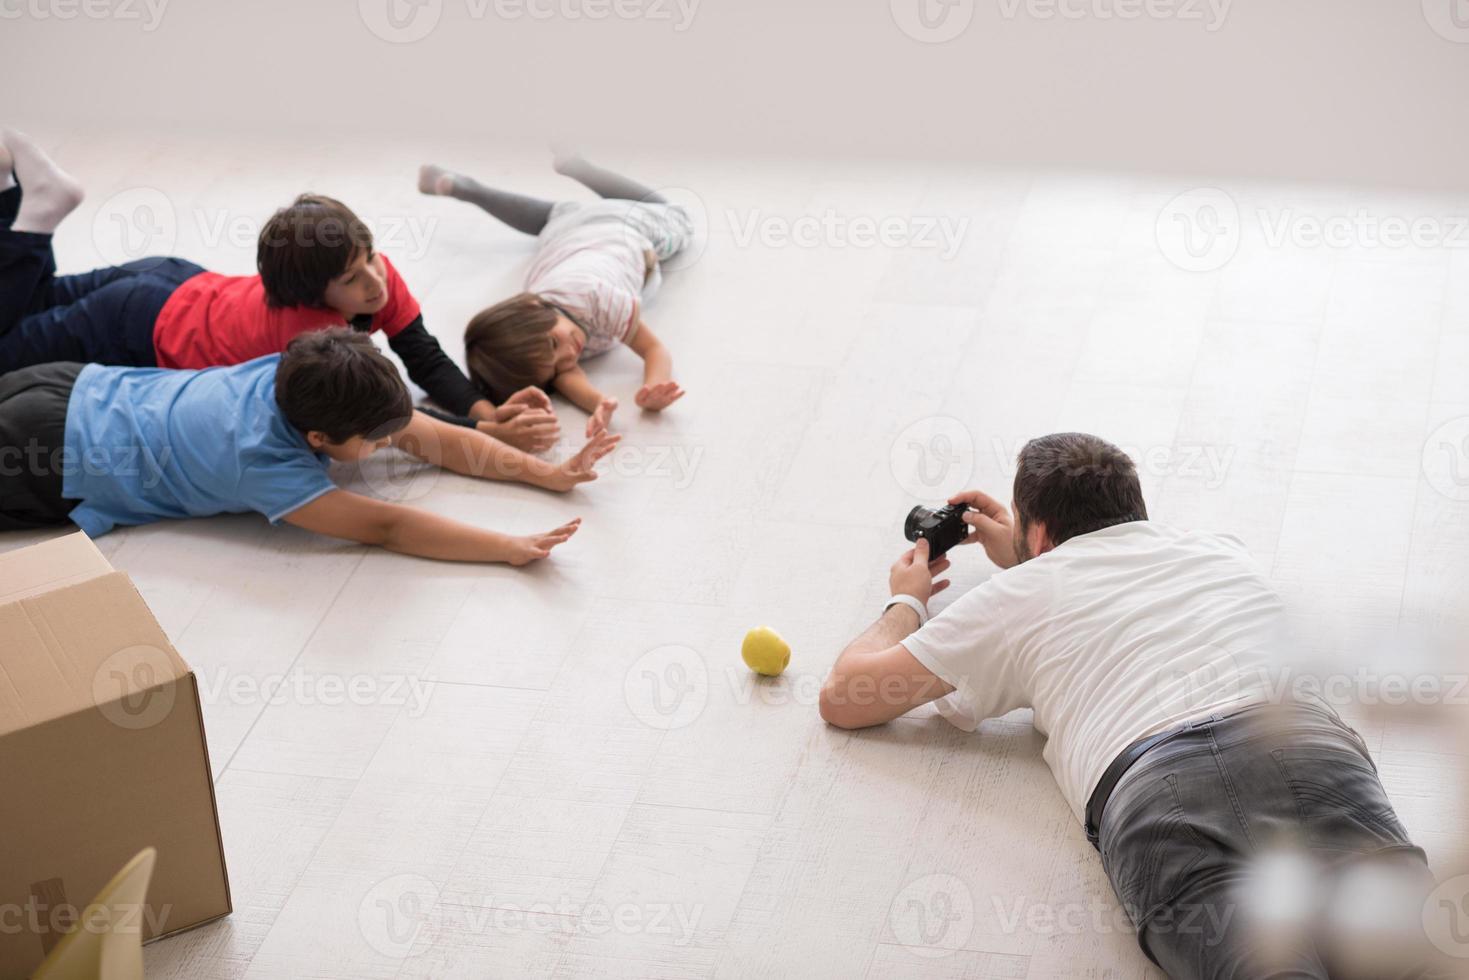 sesión de fotos con modelos infantiles